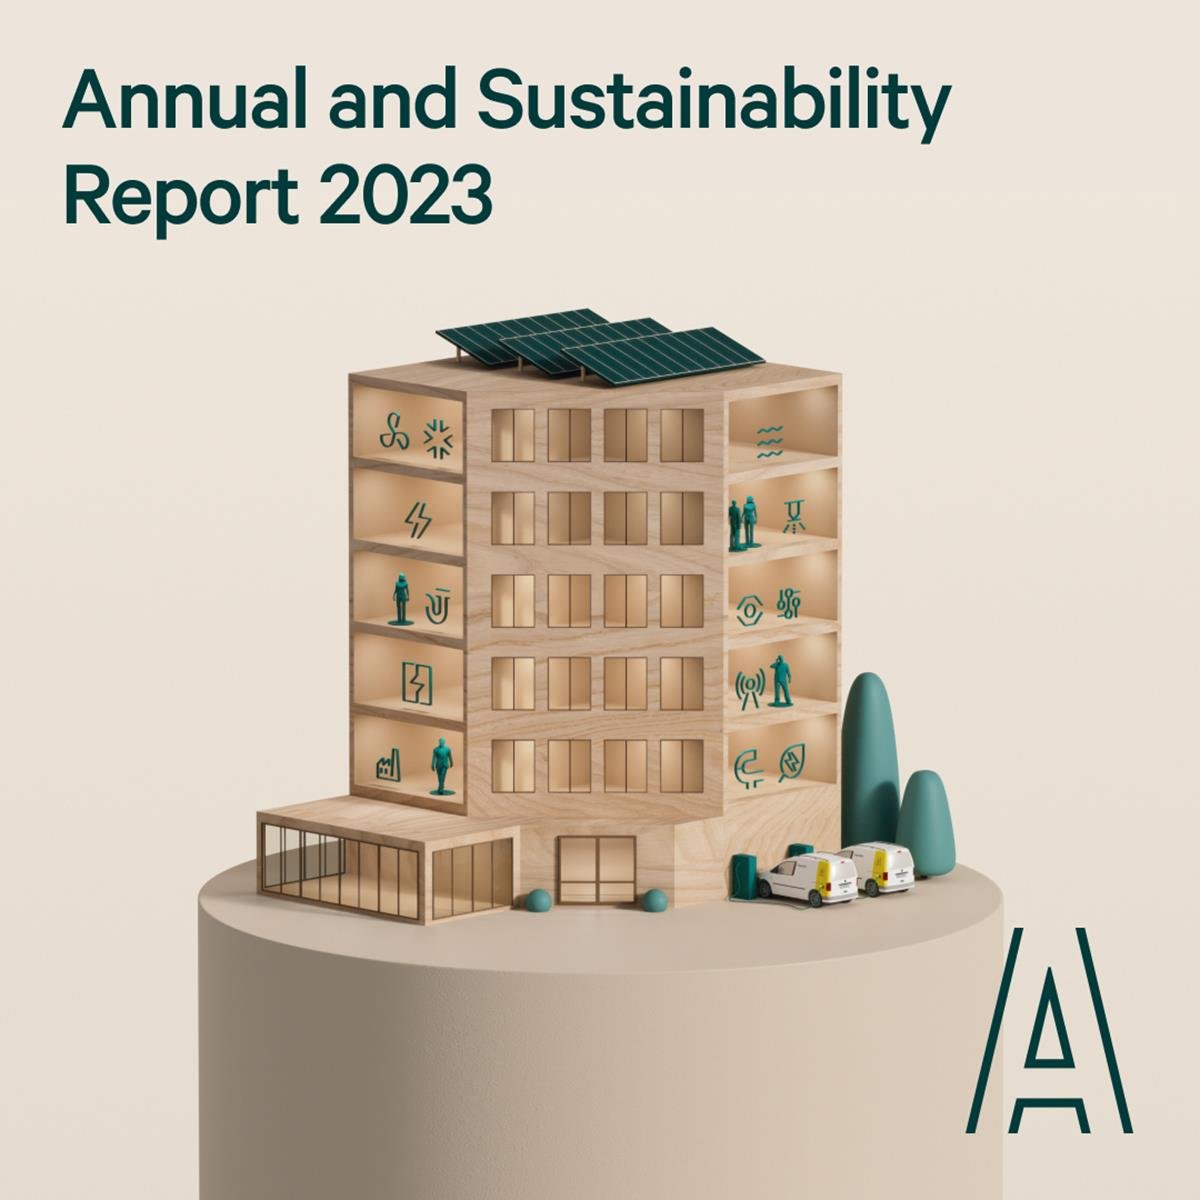 Assemblins Årsredovisning och Hållbarhetsrapport för 2023 har publicerats